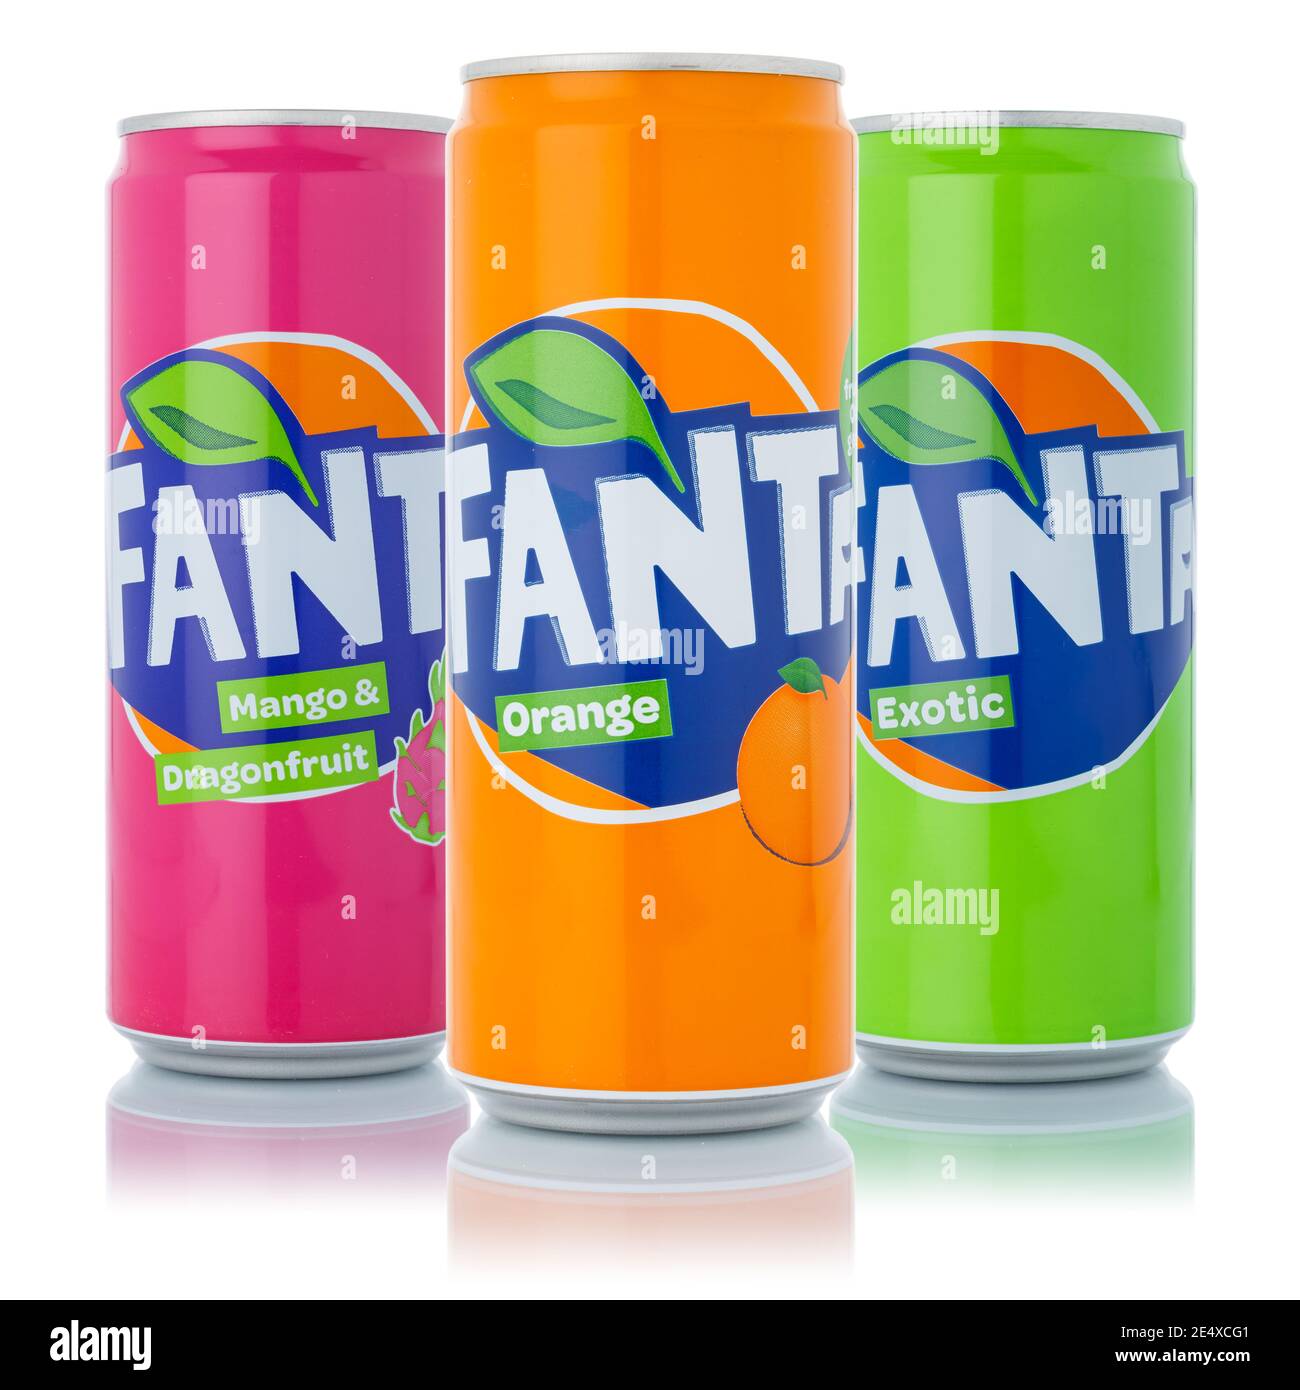 Fanta soda Banque d'images détourées - Alamy